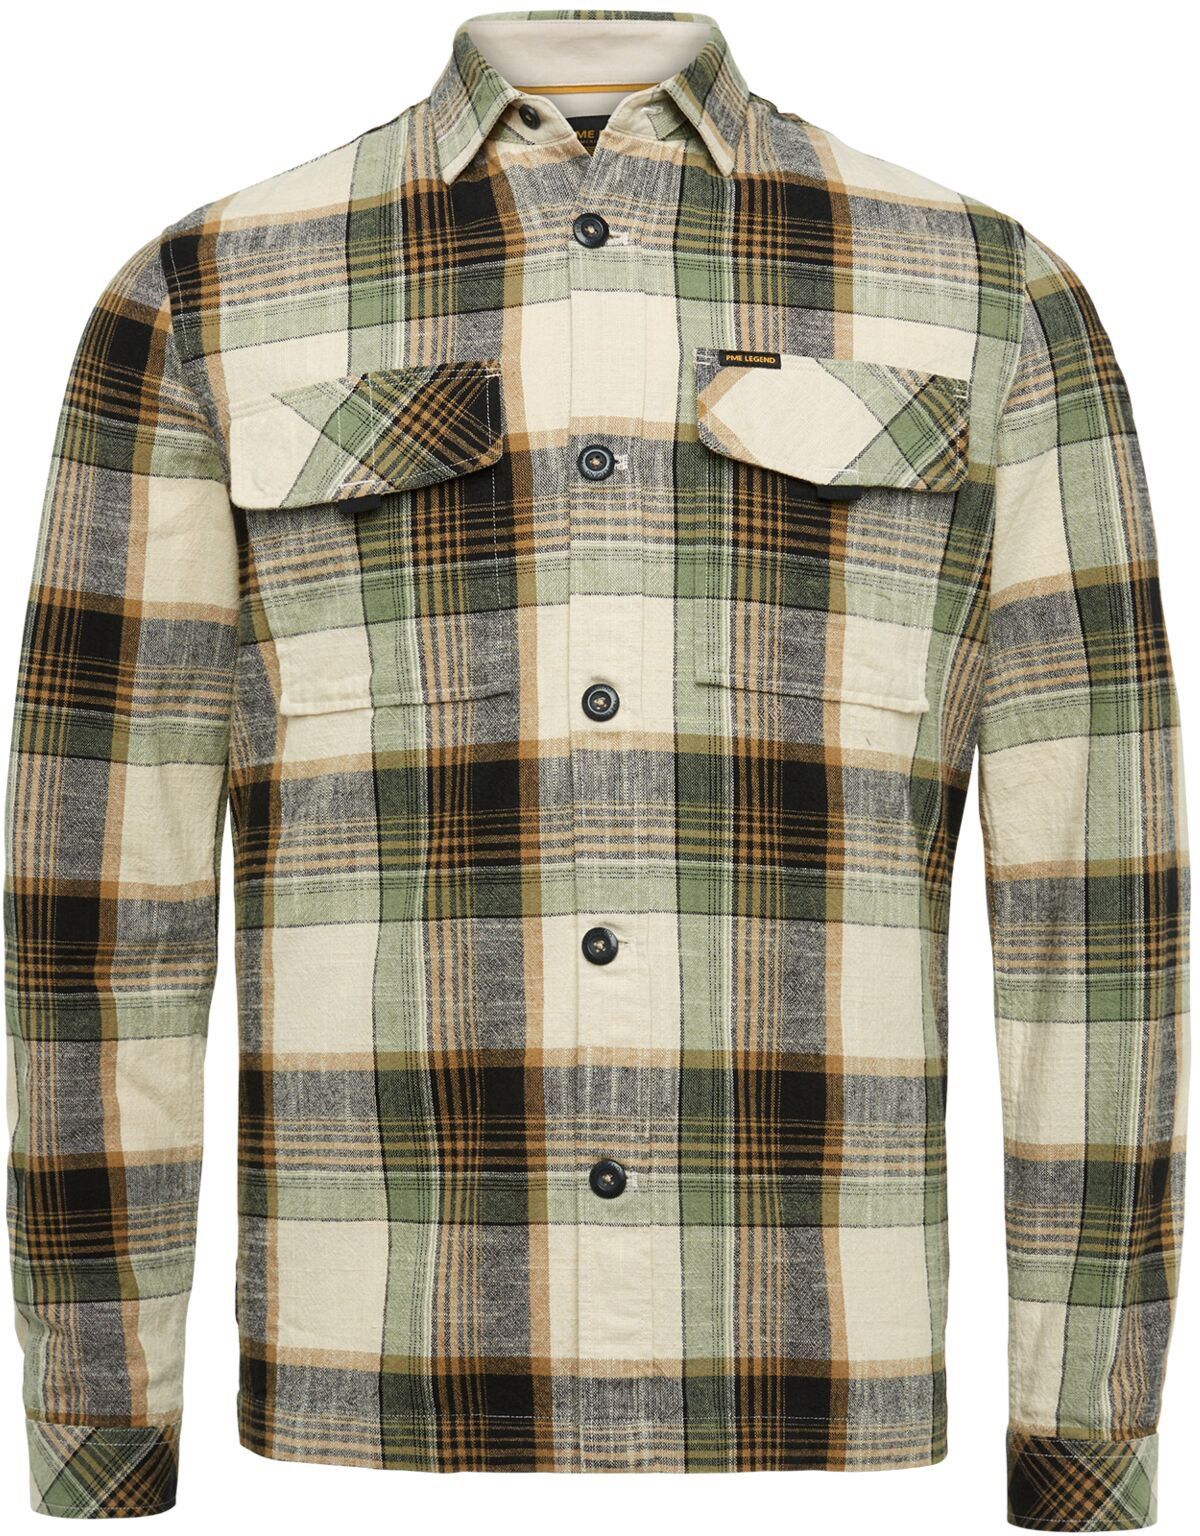 PME Legend Shirt Checkered Green Beige size 3XL